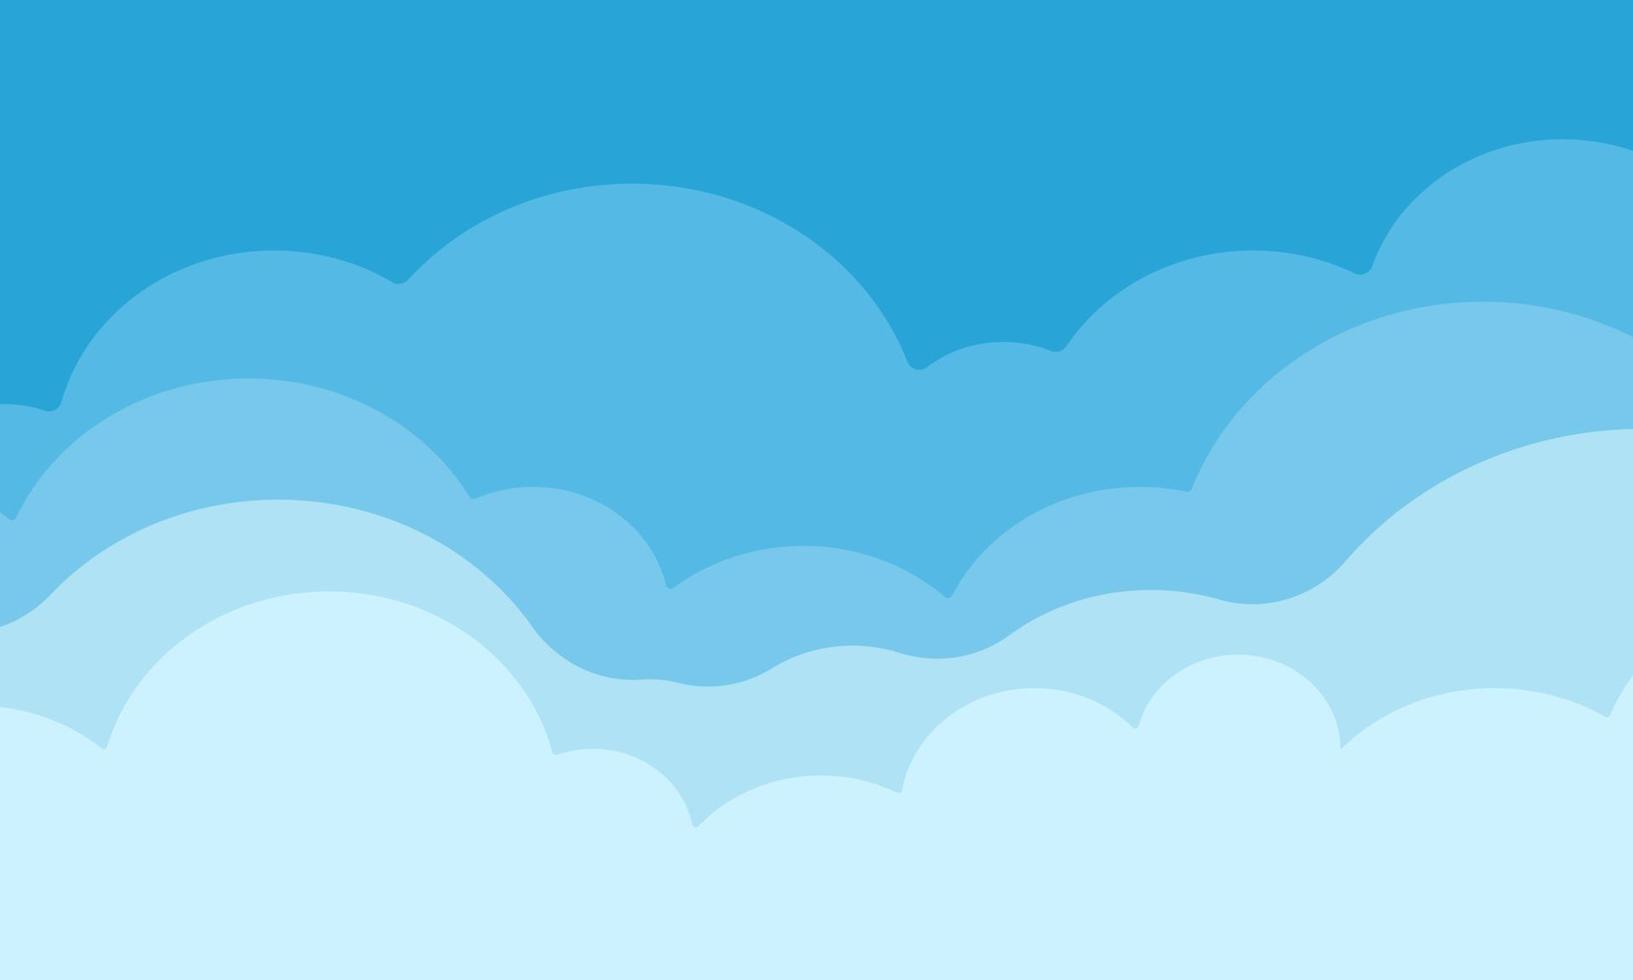 ilustração bonito céu nuvens lindo elegante isolado azul no fundo vetor